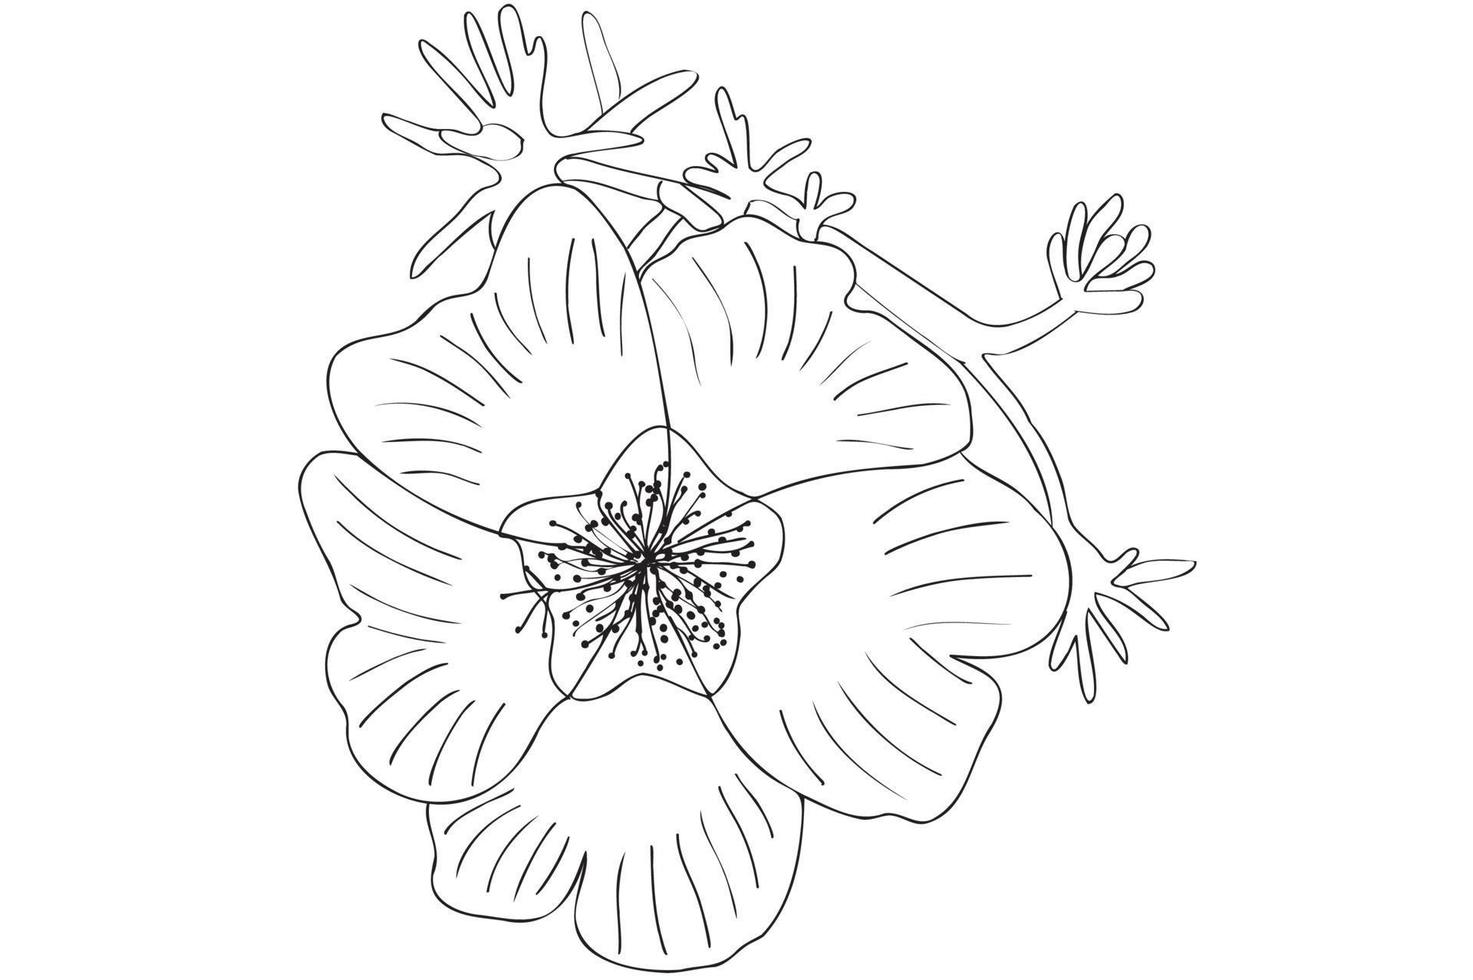 zwart-wit vector bloem, zeer fijne tekeningen, overzicht bloem illustratie, bloemen tekening met zwarte dunne contourlijn geïsoleerd op een witte achtergrond.